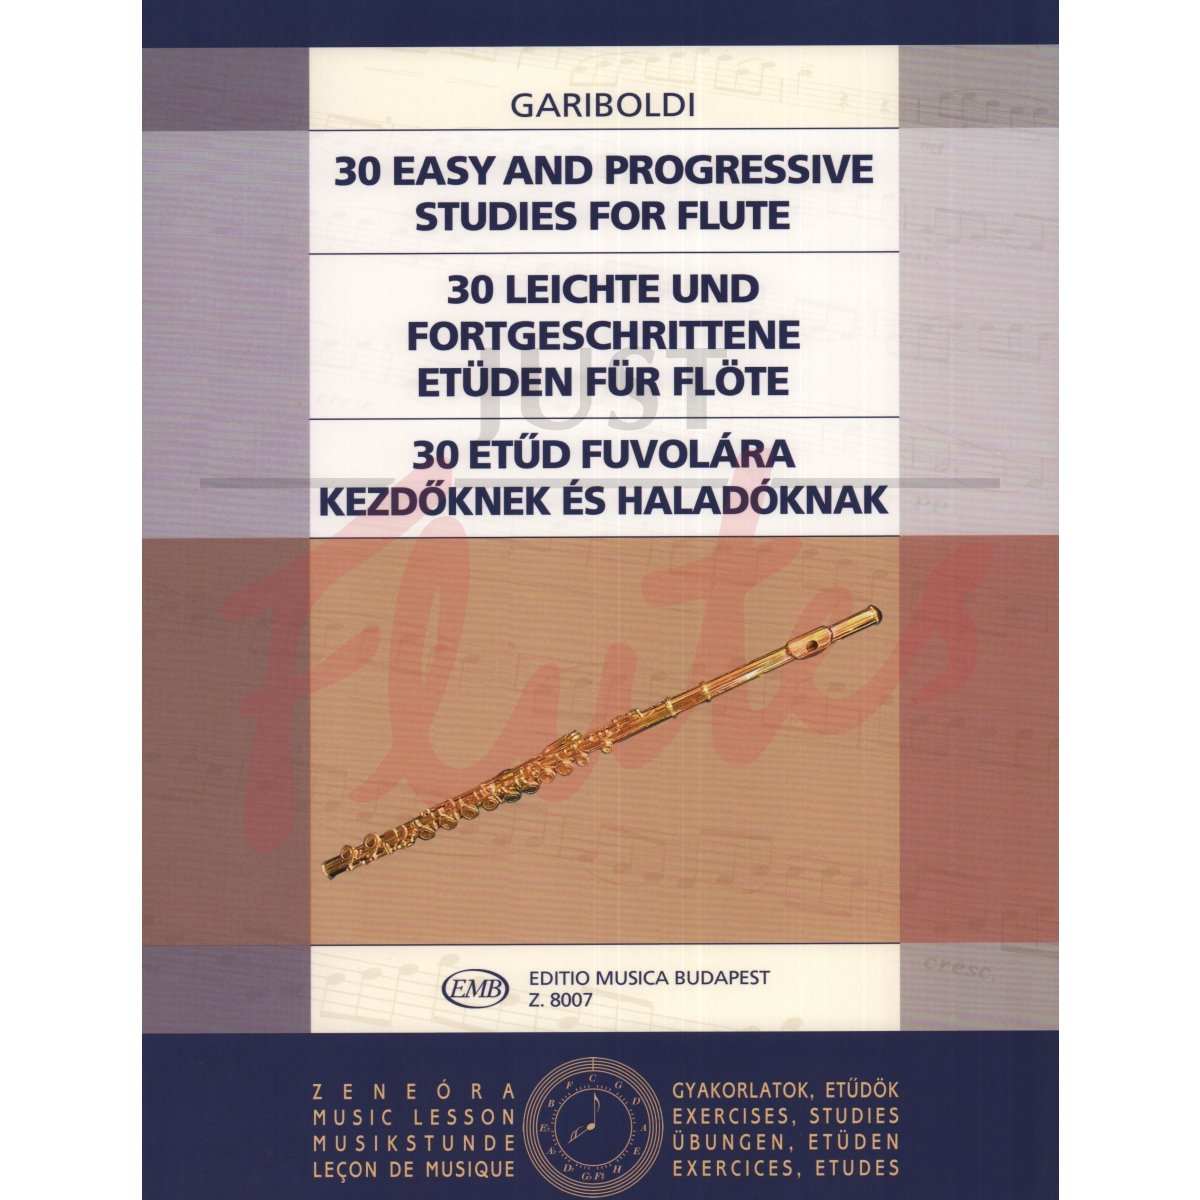 30 Easy and Progressive Studies for Flute